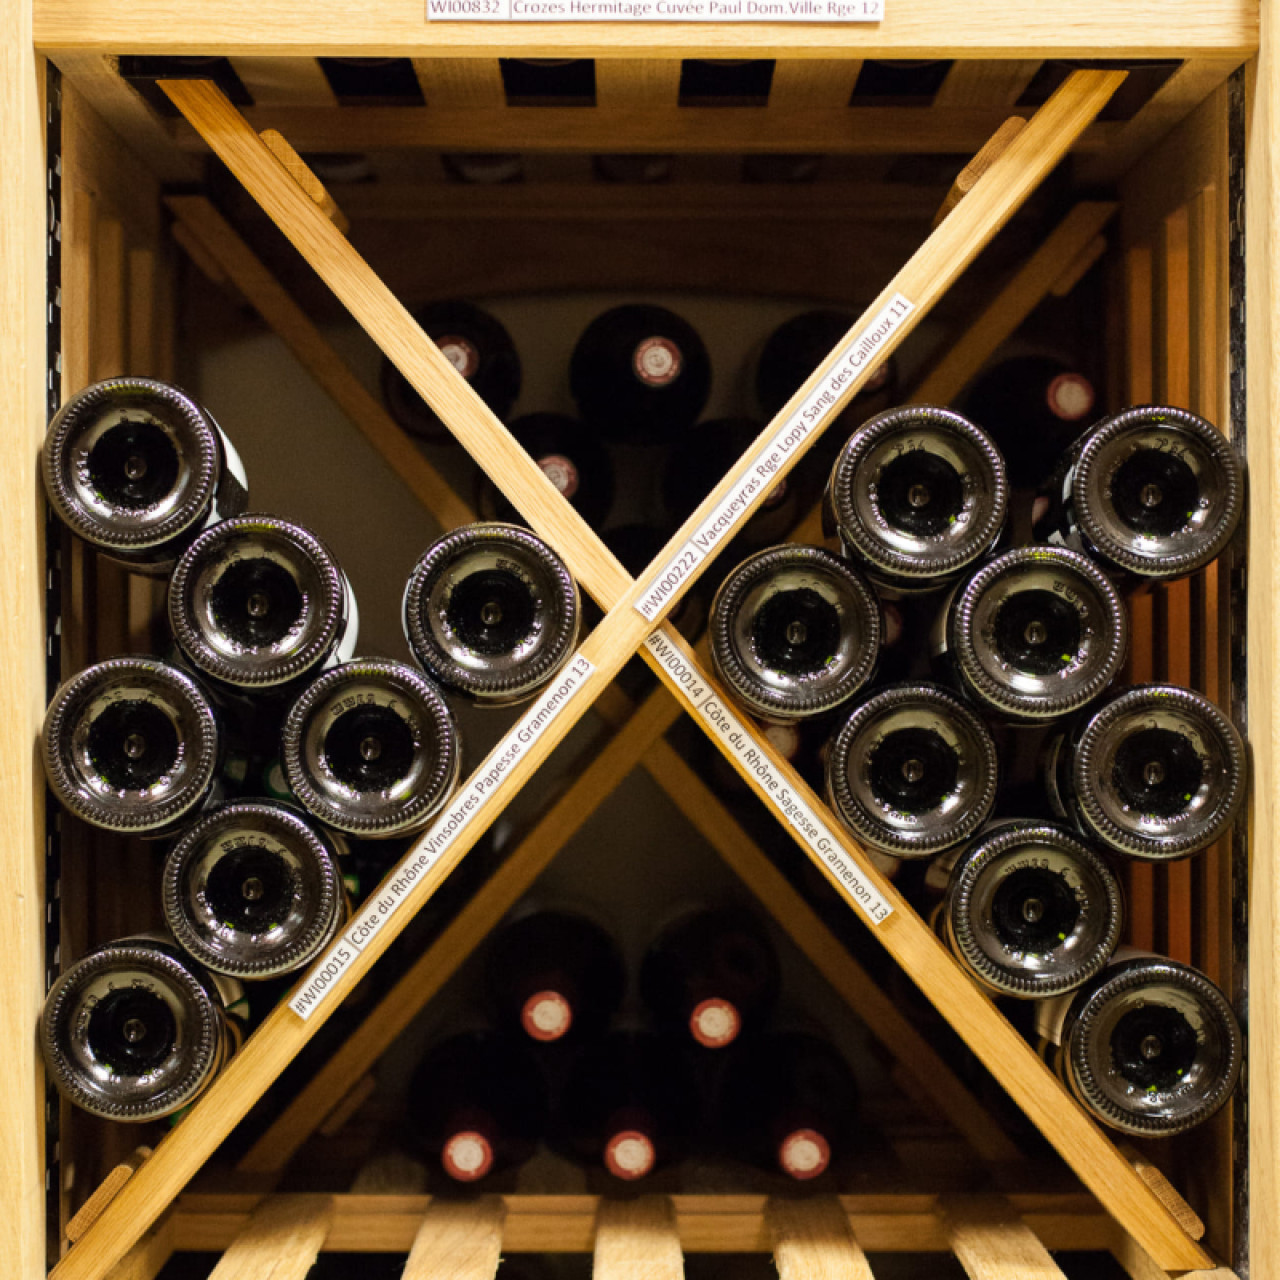 Kreuzmodul – Schrank mit stabilem festem Regal aus massivem Eichenholz zur sicheren gestapelten Aufbewahrung einer großen Menge Wein.